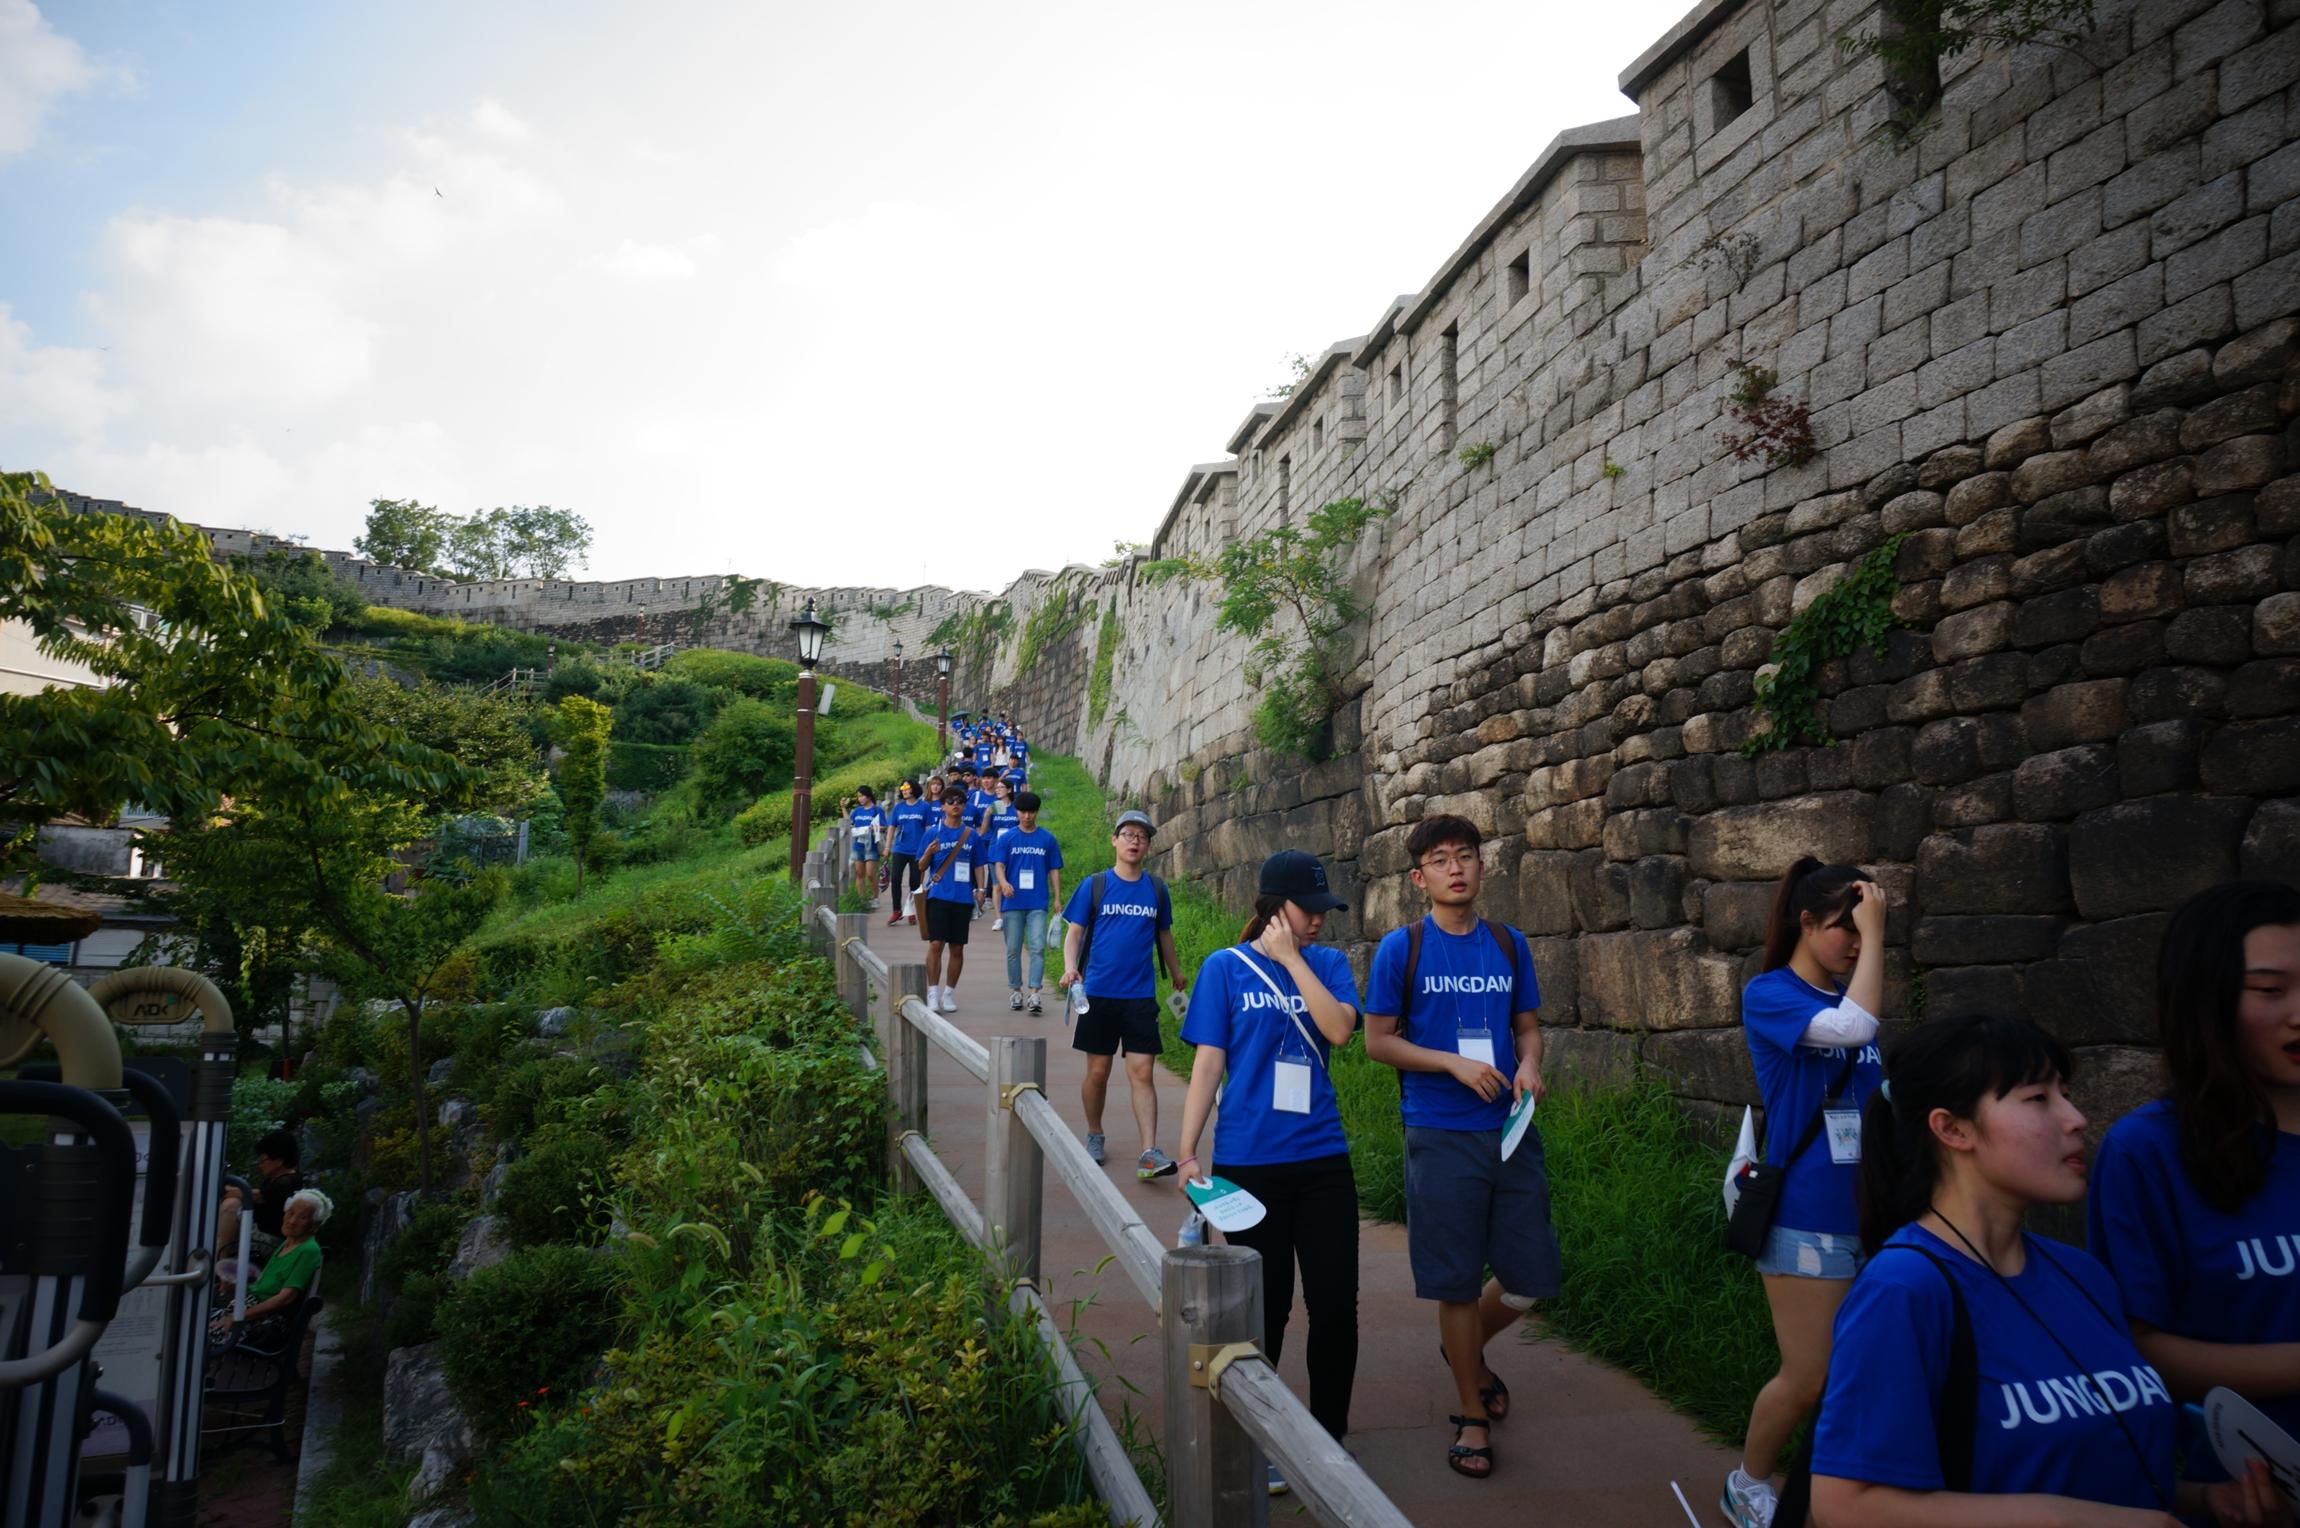 아산장학생은 나눔문화 확산을 위해 8.13일과 14일 한양도성 걷기 행사를 개최했습니다.9